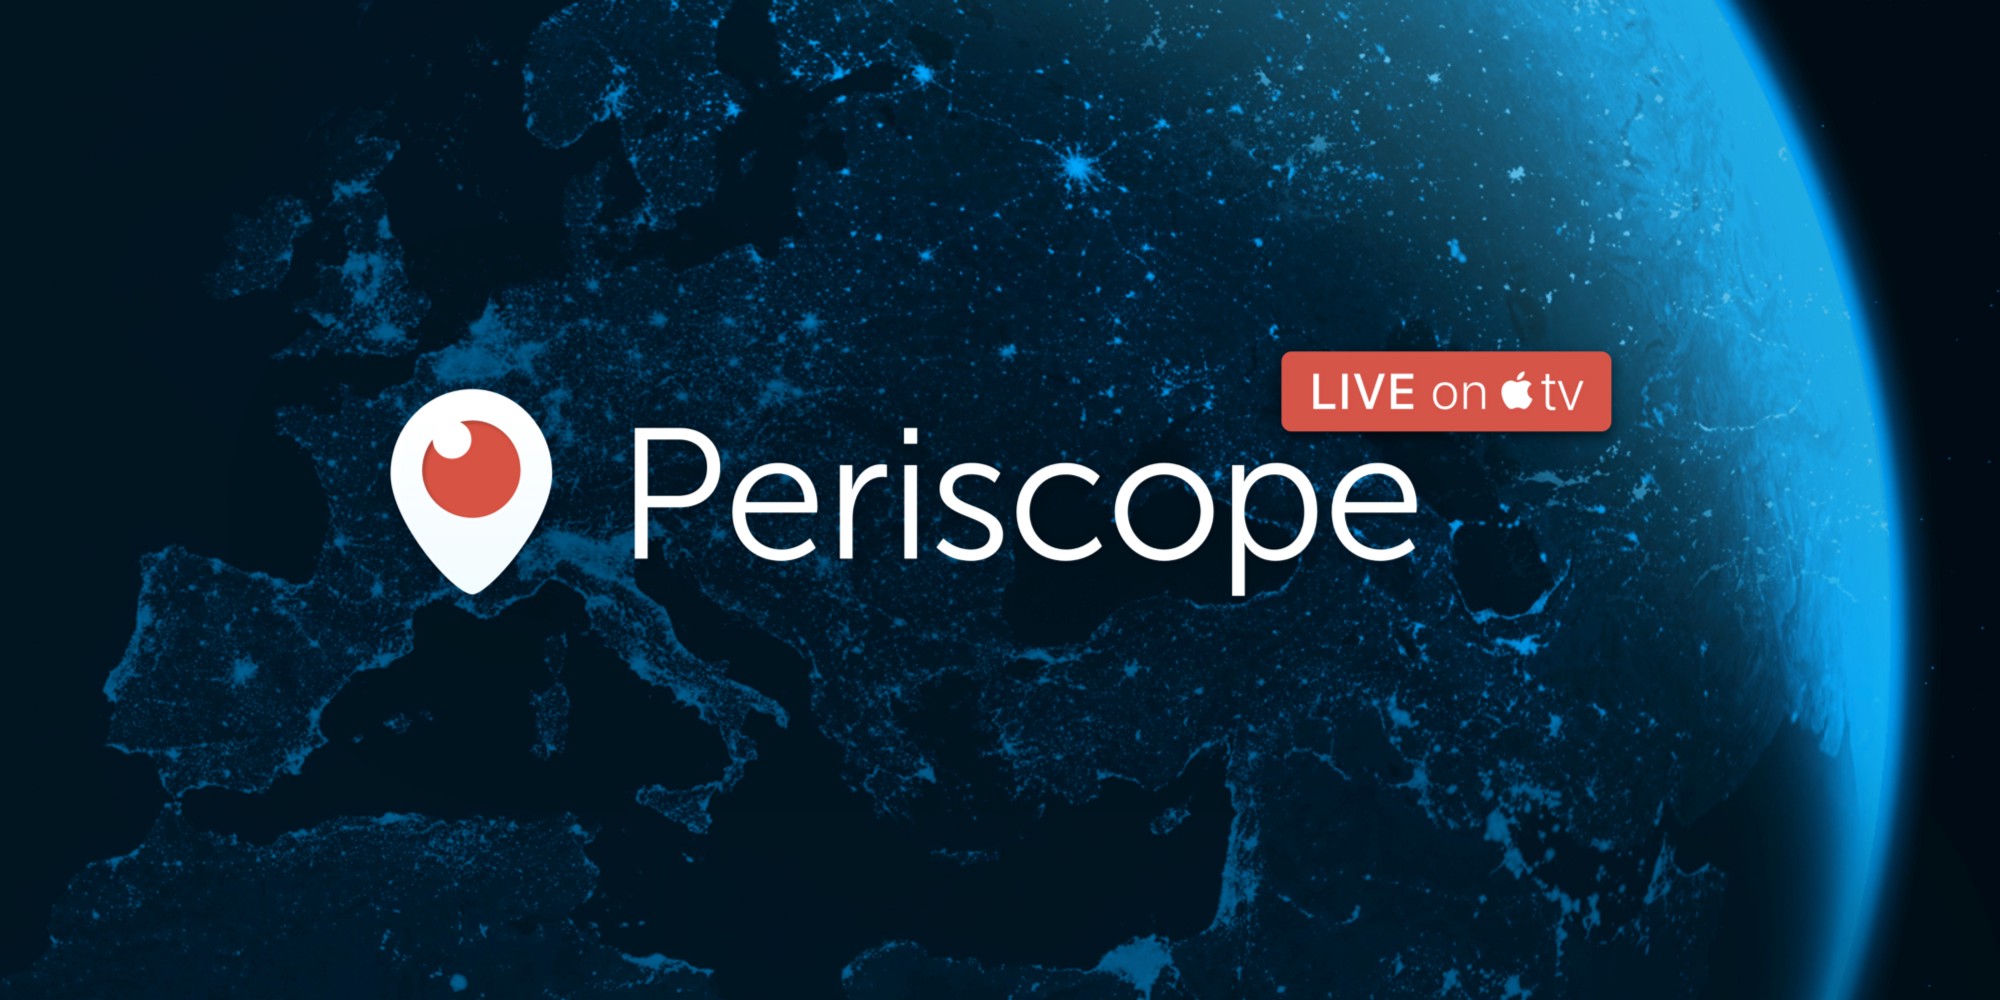 بريسكوب على أندرويد يدعم الآن بث فيديو 360 درجة